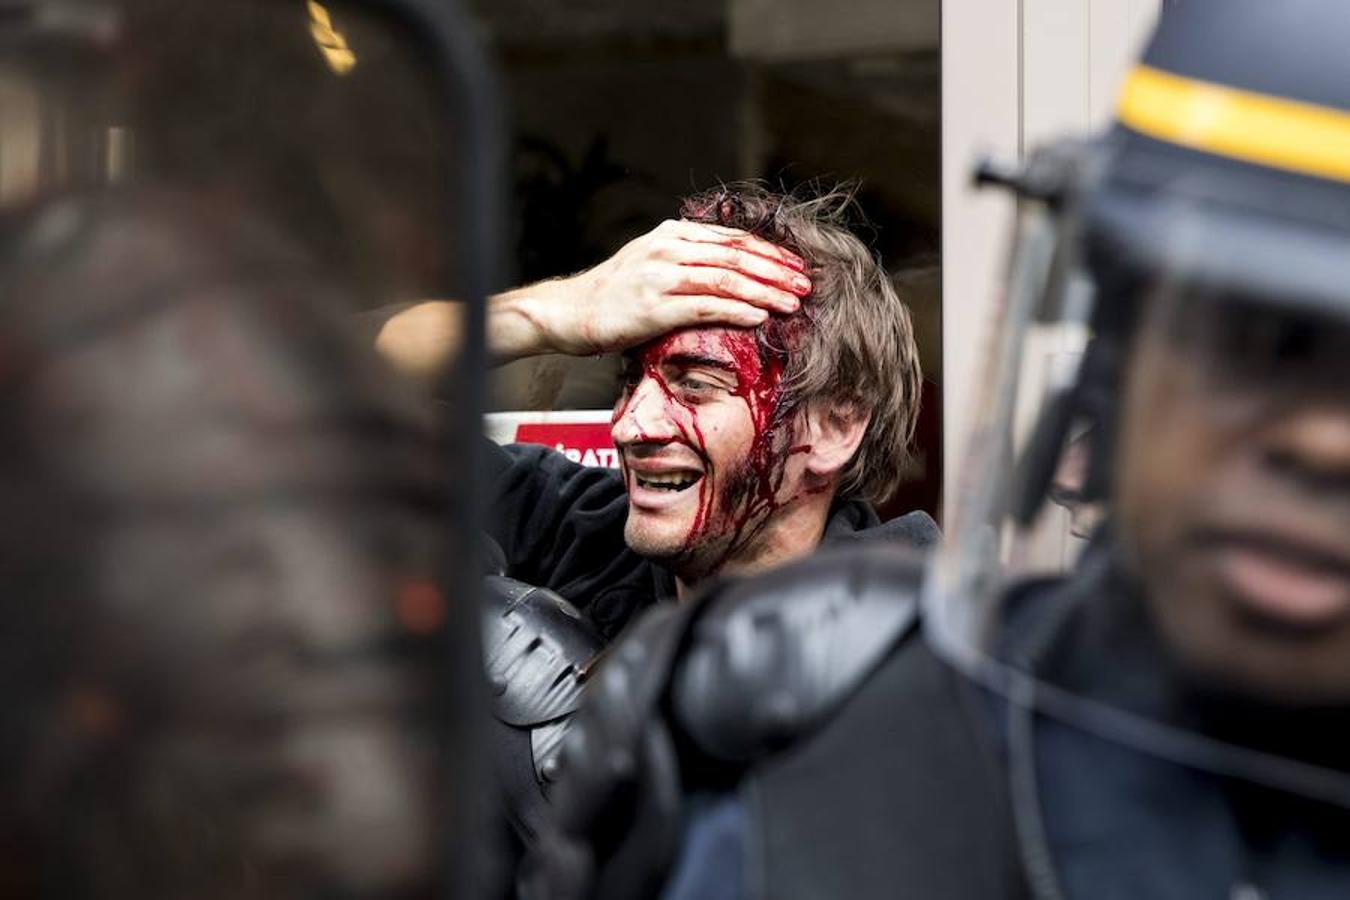 Vista de un manifestante herido durante la manifestación